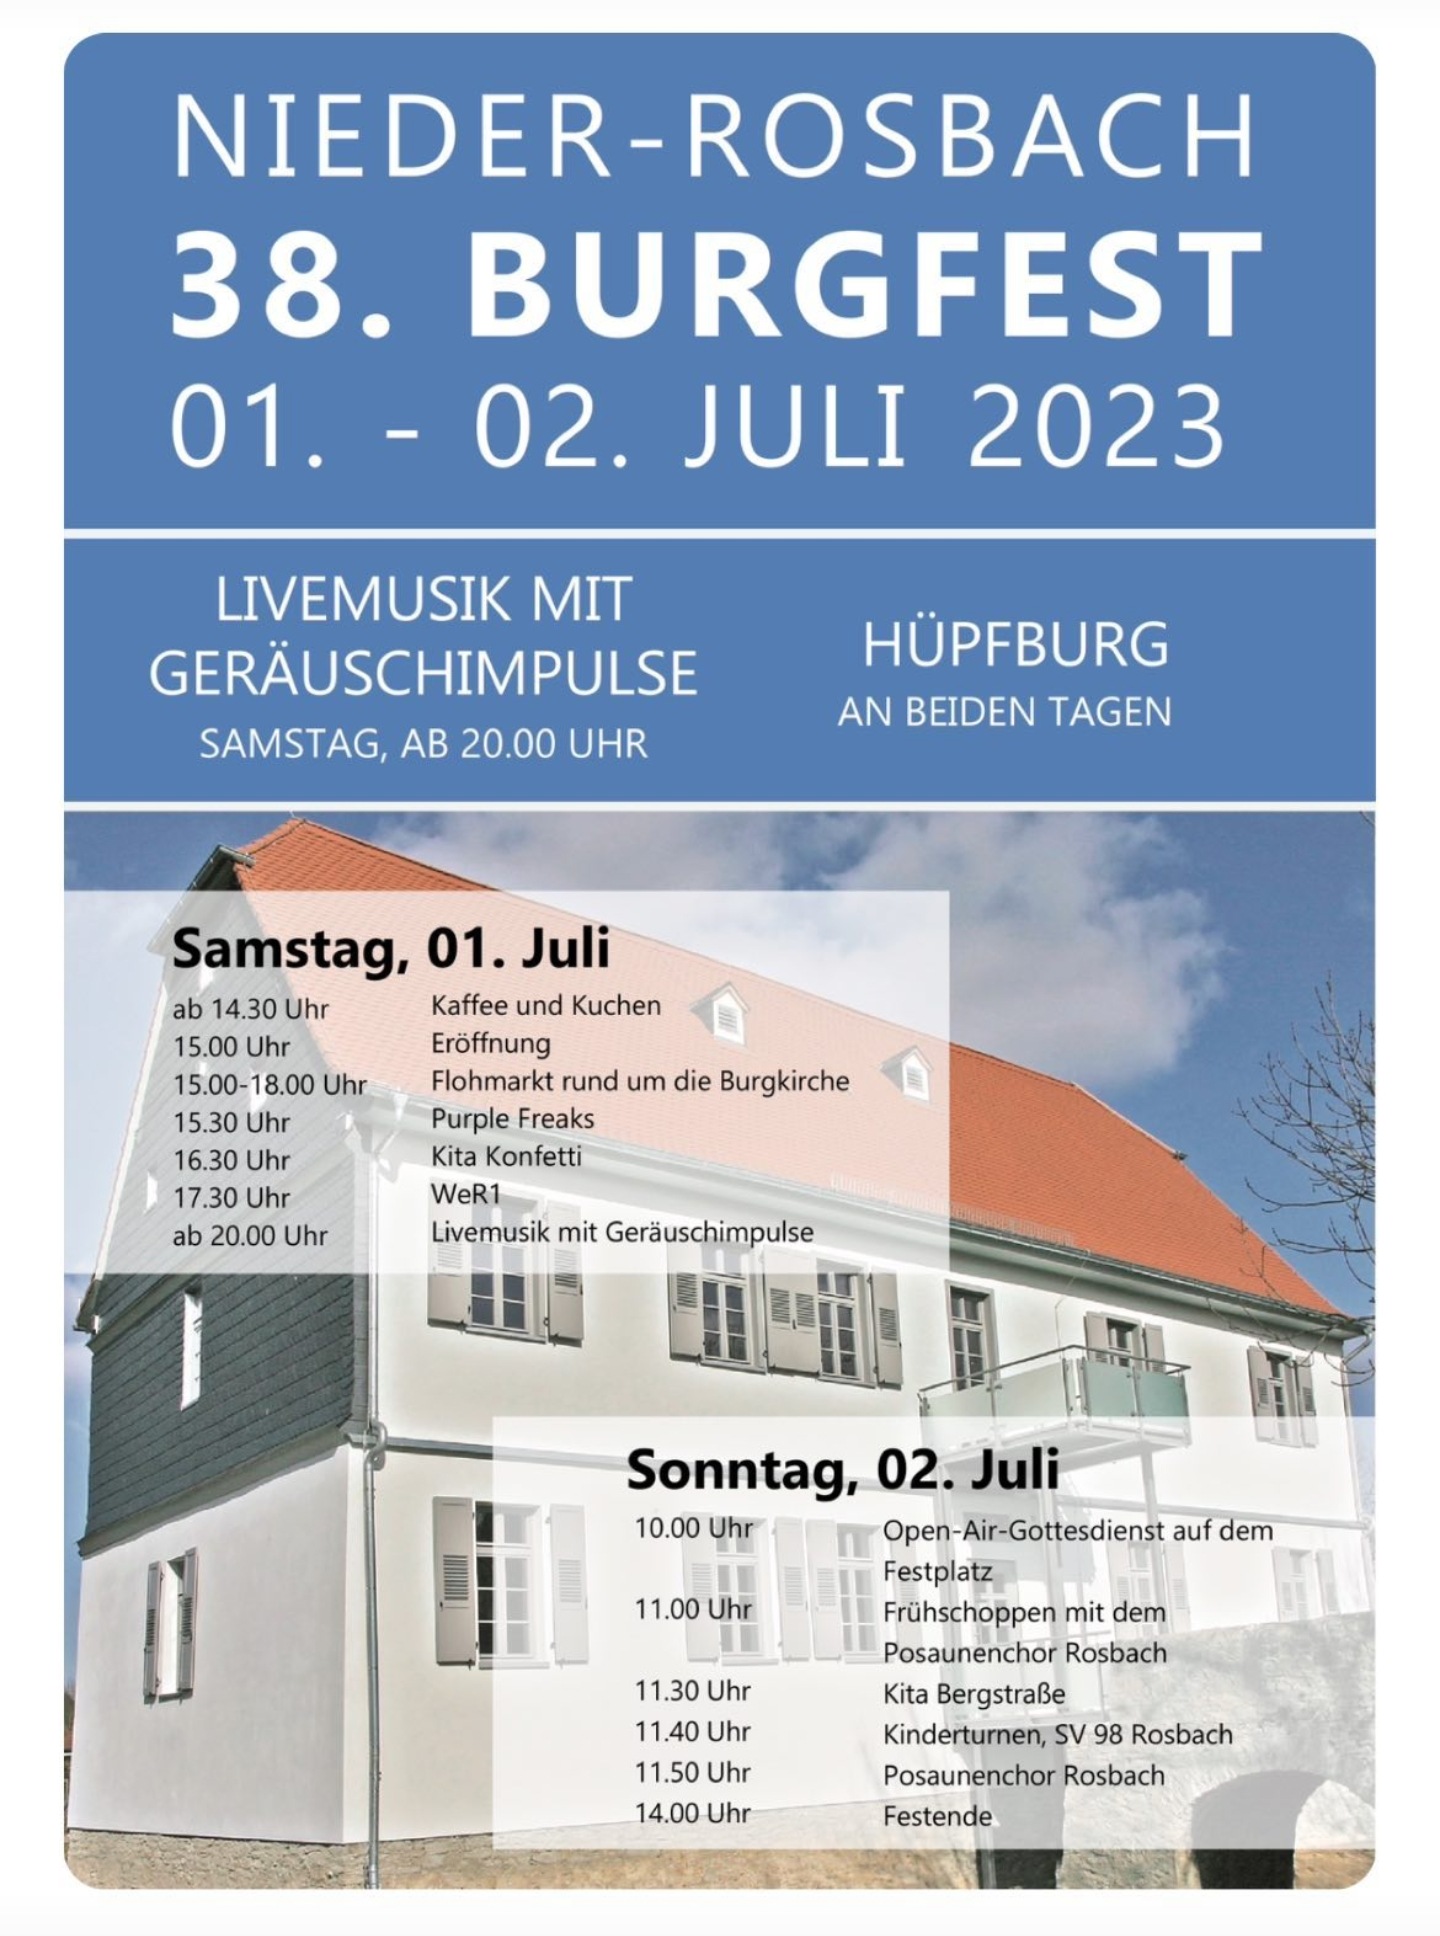 38.Burgfest Nieder-Rosbach Samstag